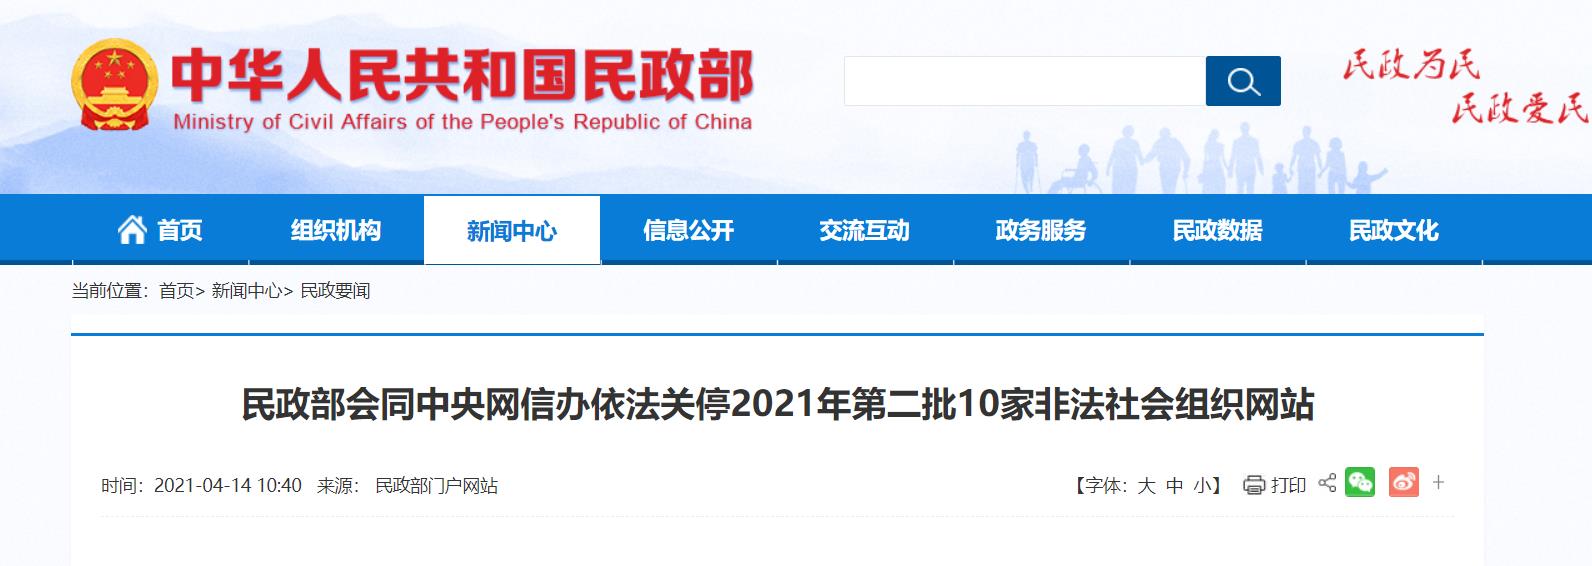 中国旗袍博物馆等10家非法社会组织网站被关停